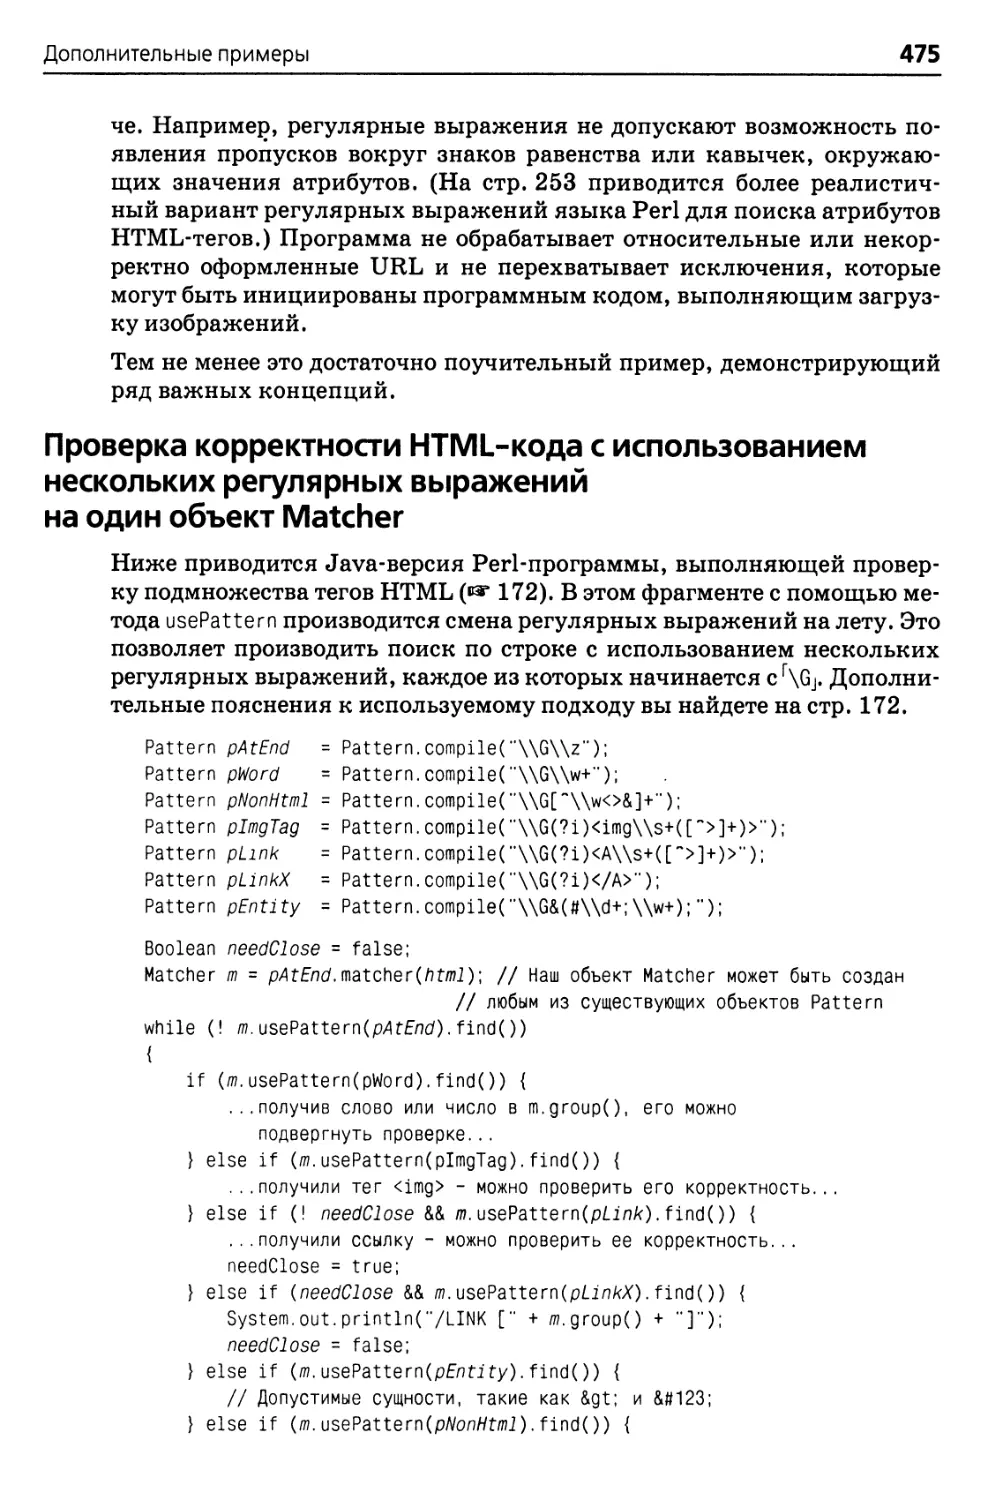 Проверка корректности HTML-кода с использованием нескольких регулярных выражений на один объект Matcher